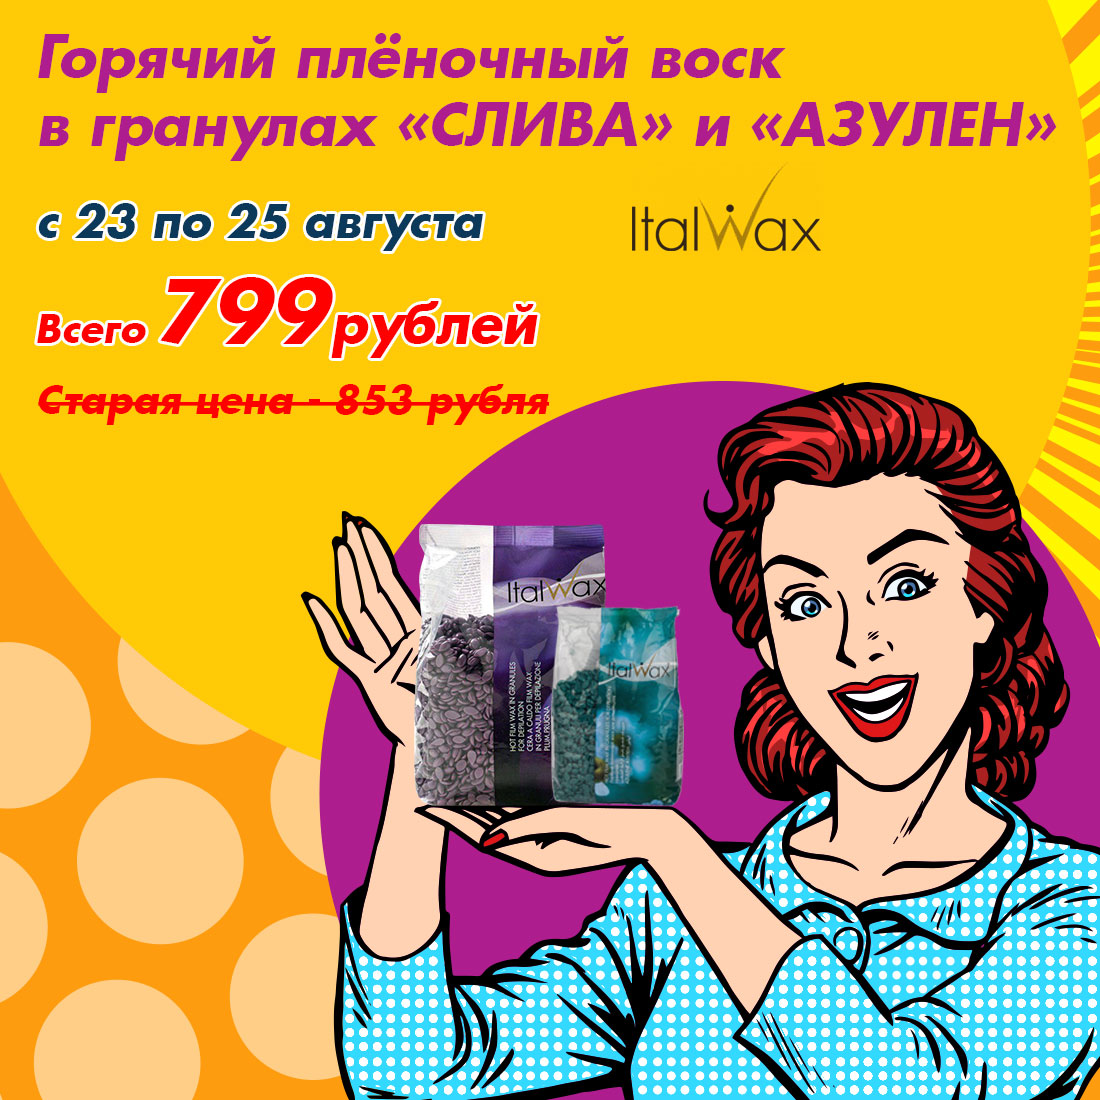 При заказе с 23.08 по 25.08 включительно - воск пленочный в гранулах ITALWAX "Азулен" и Слива" (1кг) всего по 799 рублей!